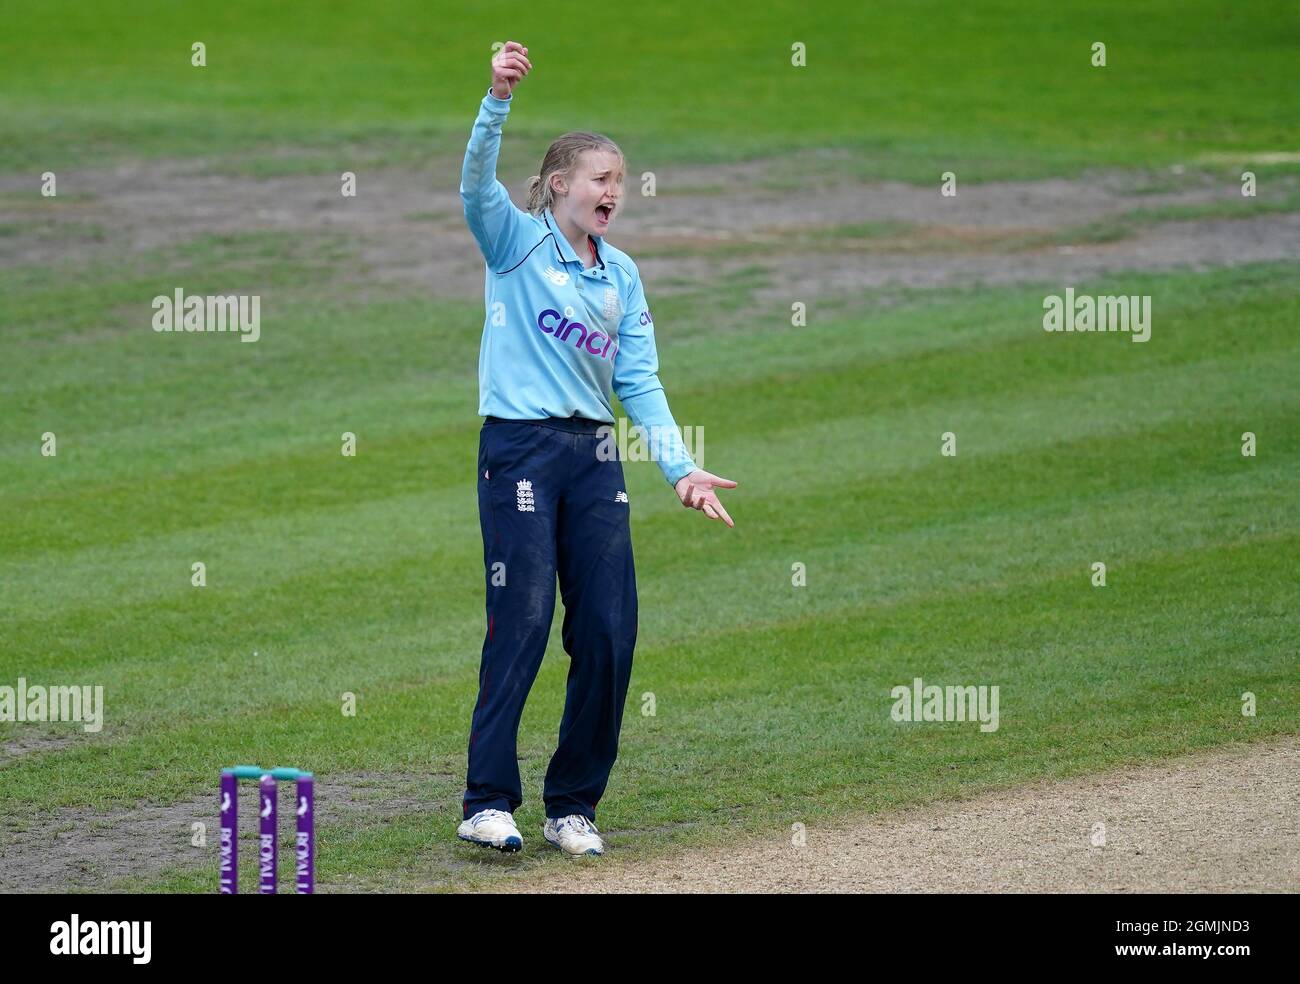 Charlie Dean, en Angleterre, a réussi à faire appel pour la cricket de Hannah Rowe, en Nouvelle-Zélande, lors du second ODI à New Road, Worcester. Date de la photo: Dimanche 19 septembre 2021. Banque D'Images